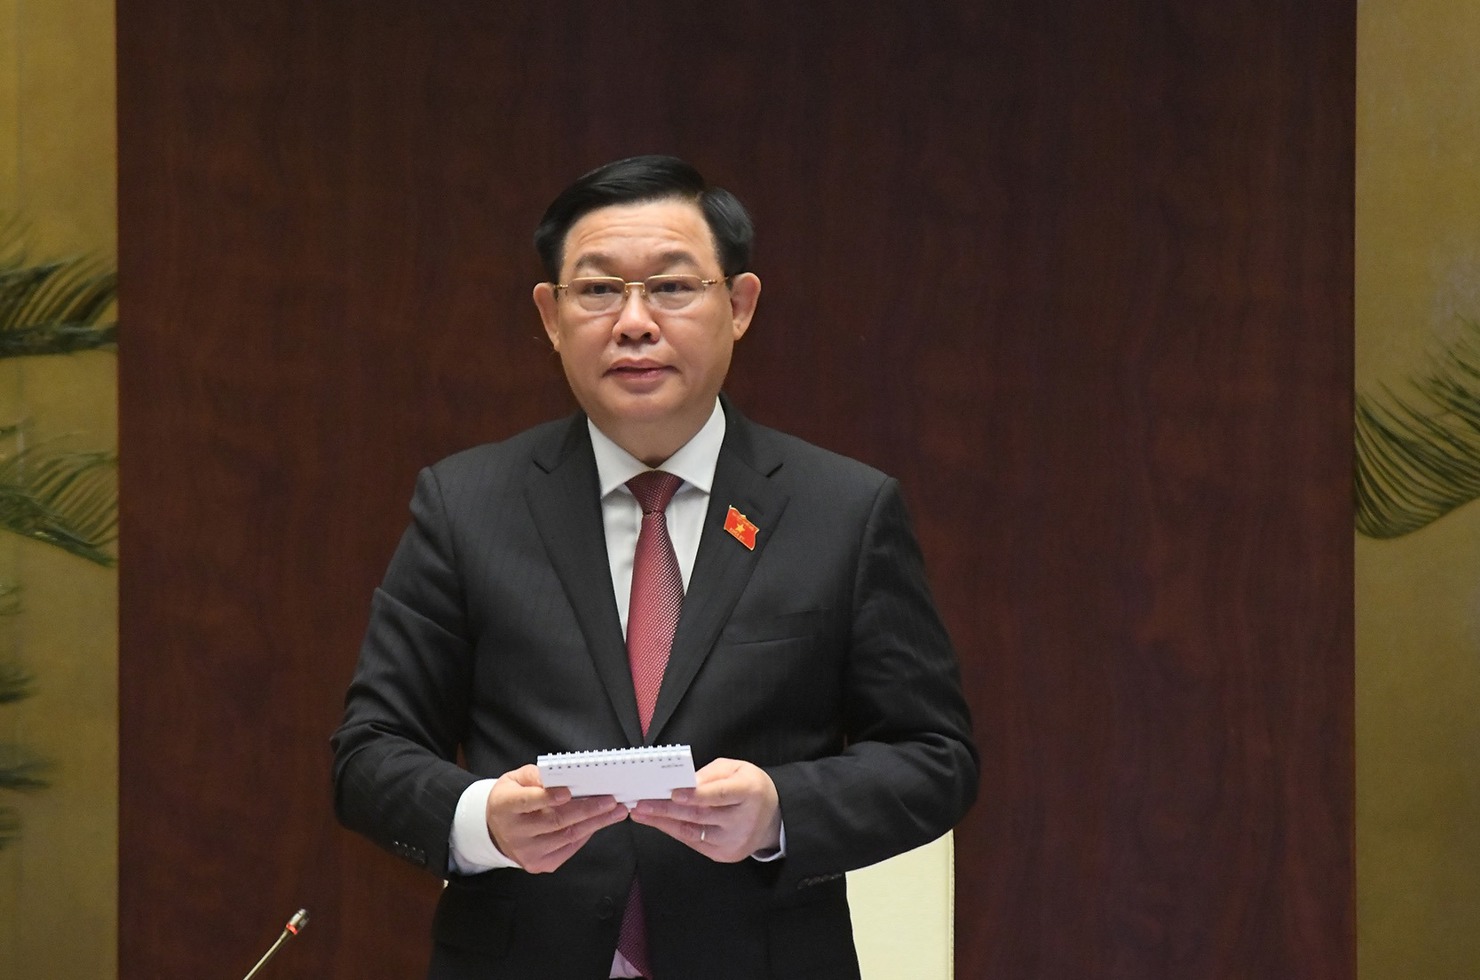 Chủ tịch Quốc hội Vương Đình Huệ phát biểu kết luận phần chất vấn và trả lời chất vấn đối với nhóm vấn đề giáo dục, đào tạo.